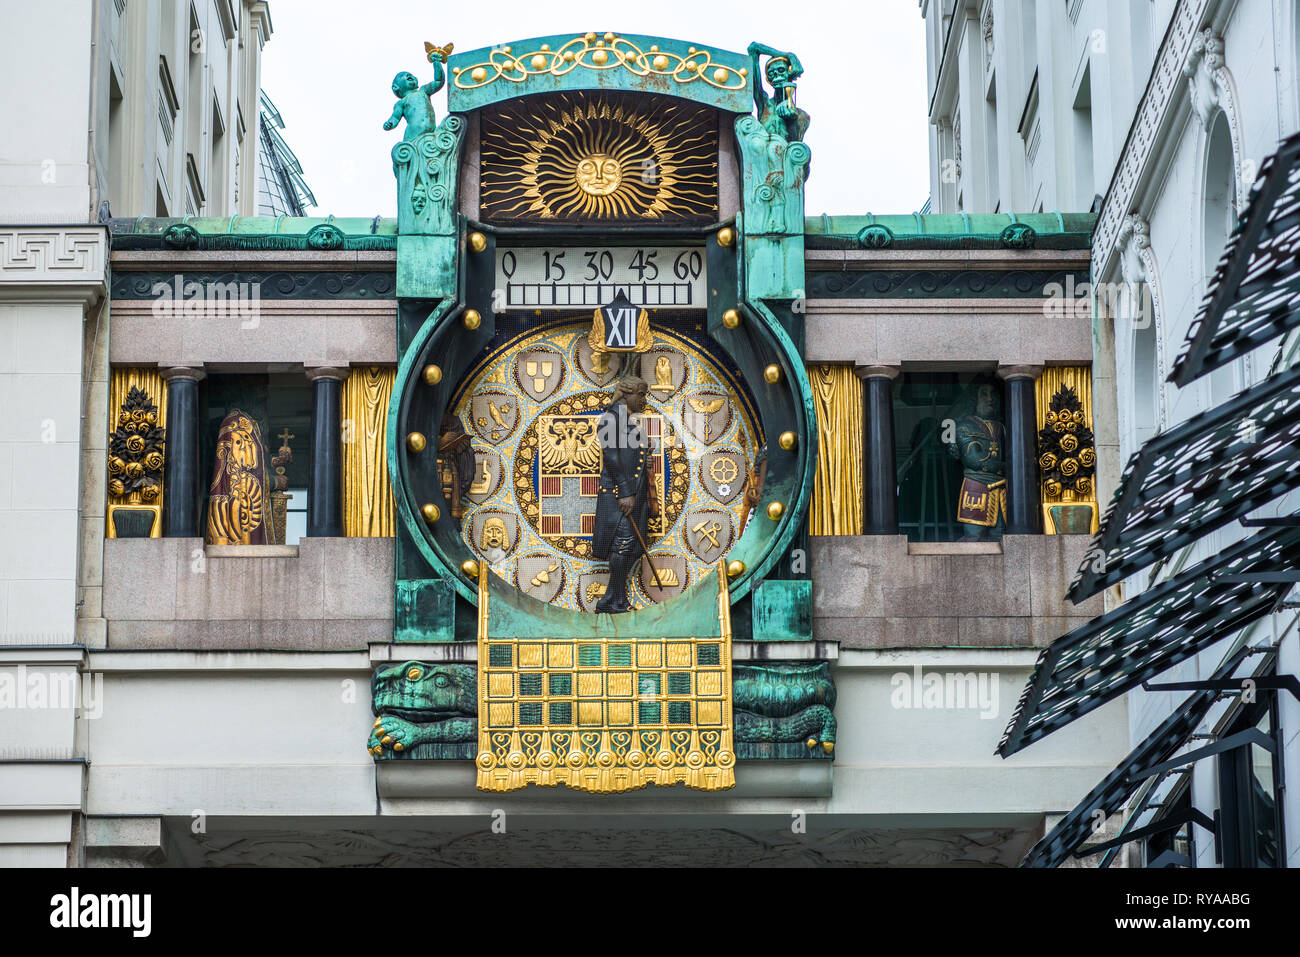 Ankeruhr Anker (horloge) à Hohen Markt, célèbre horloge astronomique à Vienne, Autriche construit par Franz von Matsch. Banque D'Images